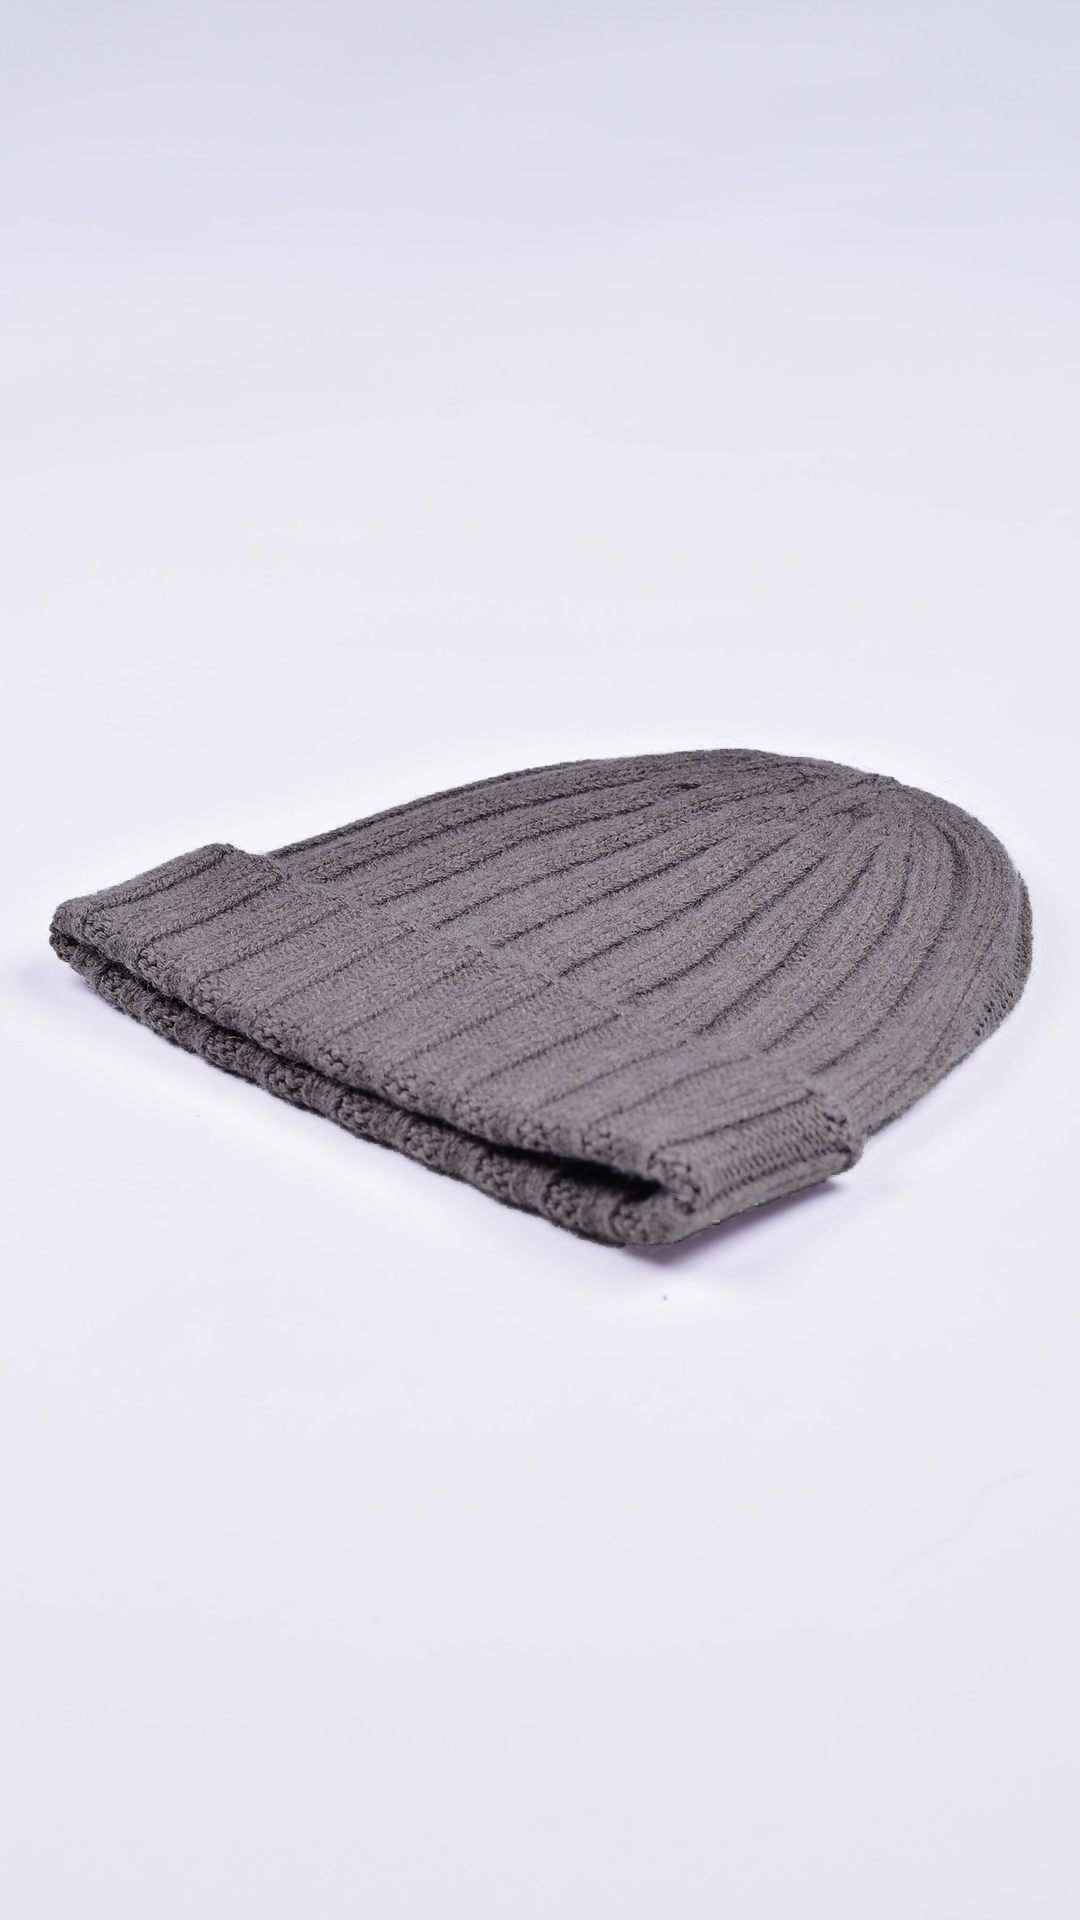 Wallisdario fango 2 1stAmerican cappellino lana e cashmere Made in Italy da uomo - caldo berretto invernale a coste larghe